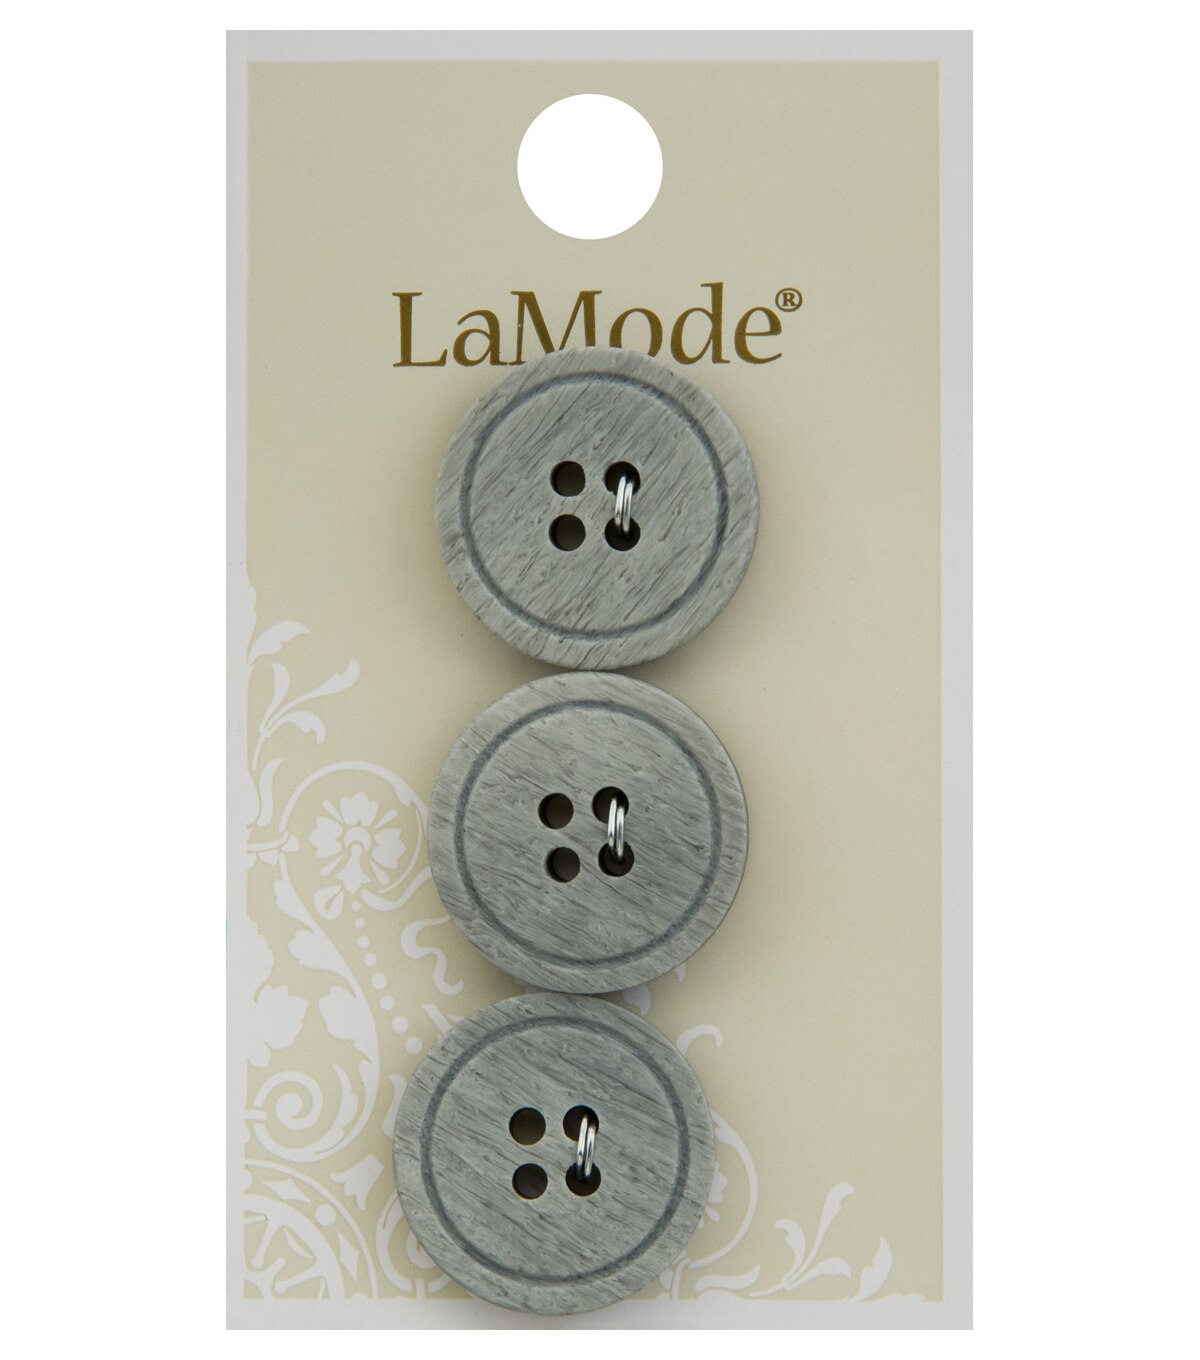 La Mode 3 Pk 075 Round Buttons Gray Joann